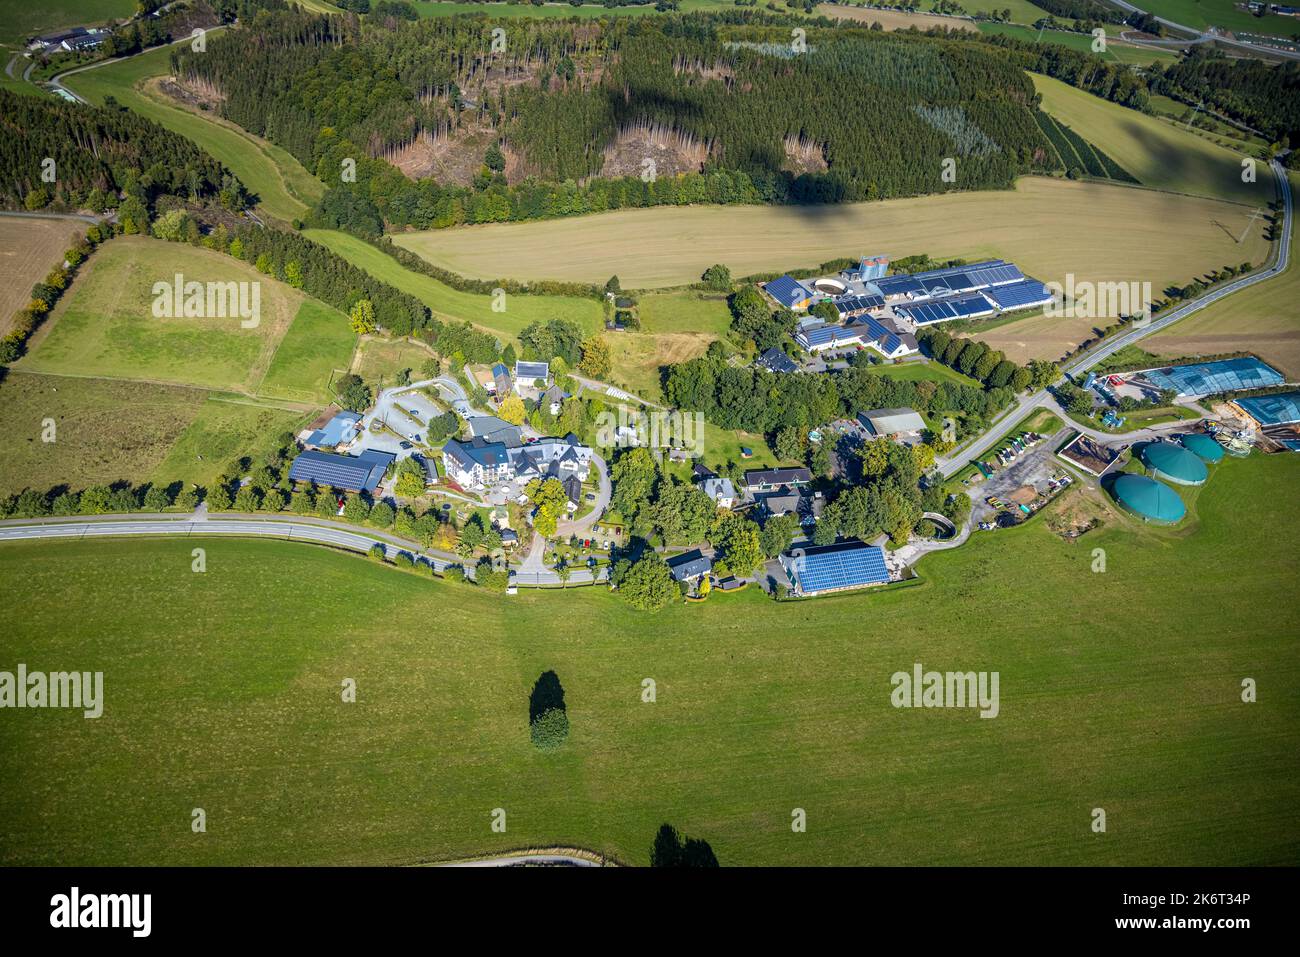 , Veduta aerea, albergo familiare Ebbinghof, fattoria Muth-Köhne, fattoria Peitz, Biogas pianta, fattorie, prati e campi, cielo blu con nuvole, vista distante, Wormb Foto Stock